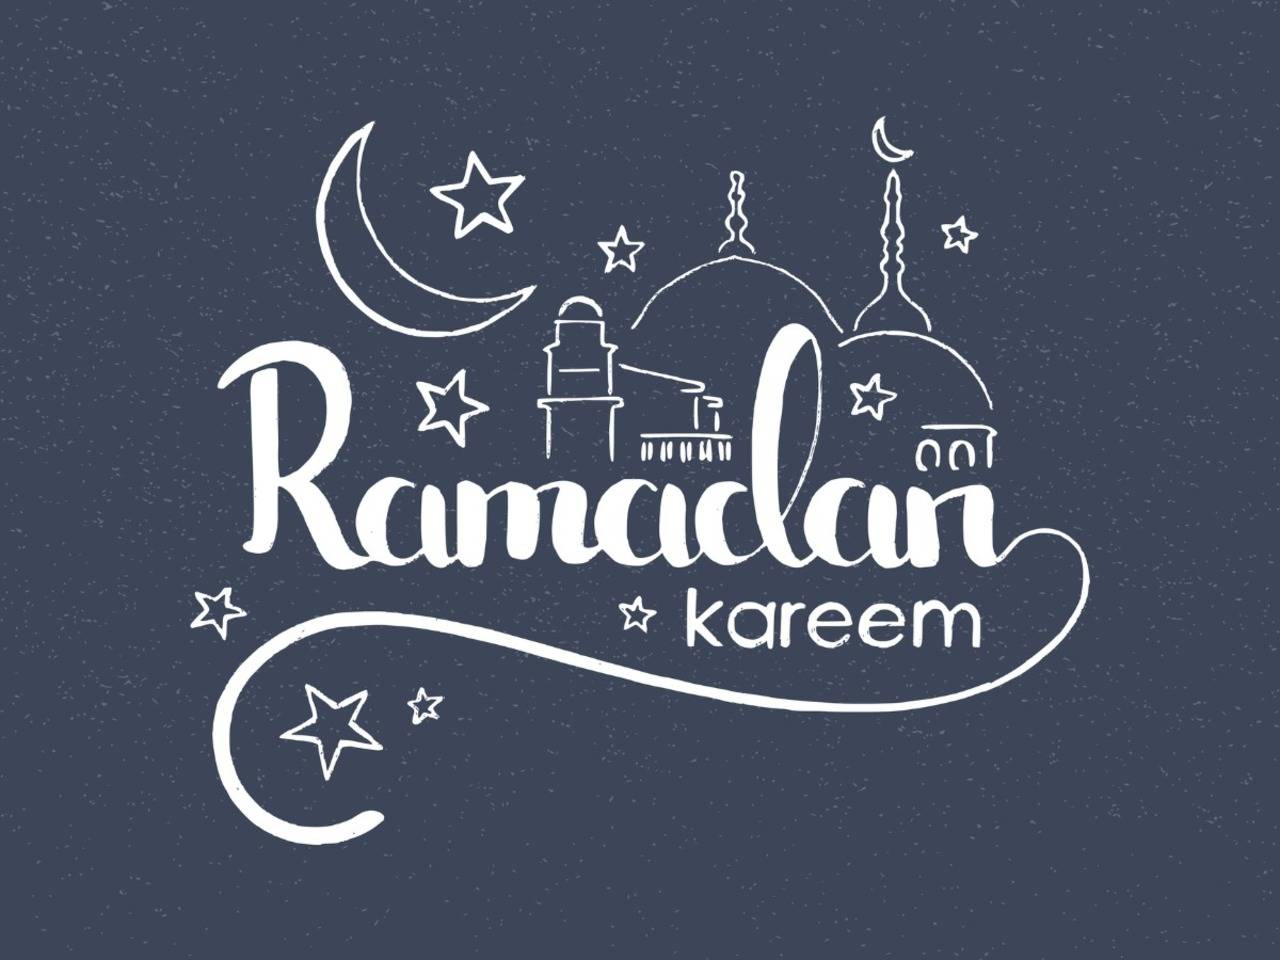 Incredible Assortment of Ramadan Mubarak Images – Over 999+ Stunning Ramadan Mubarak Images in Full 4K Resolution